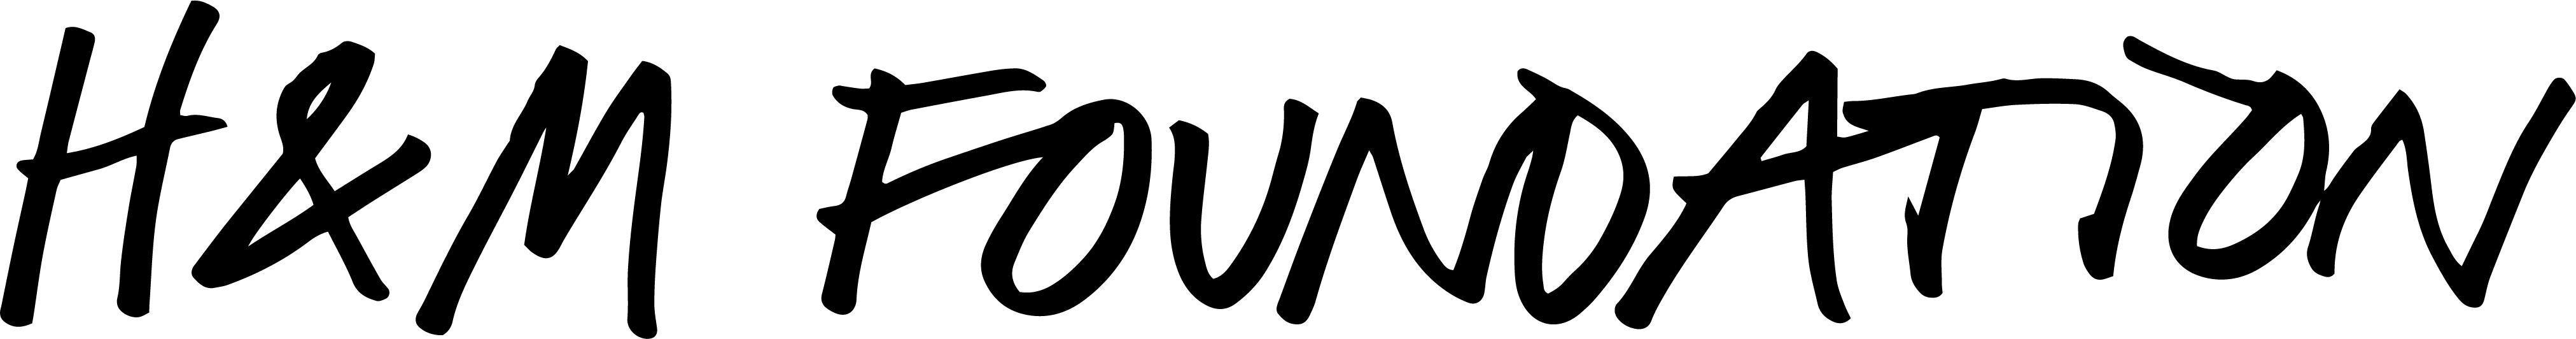 H&M Logo PNG Image